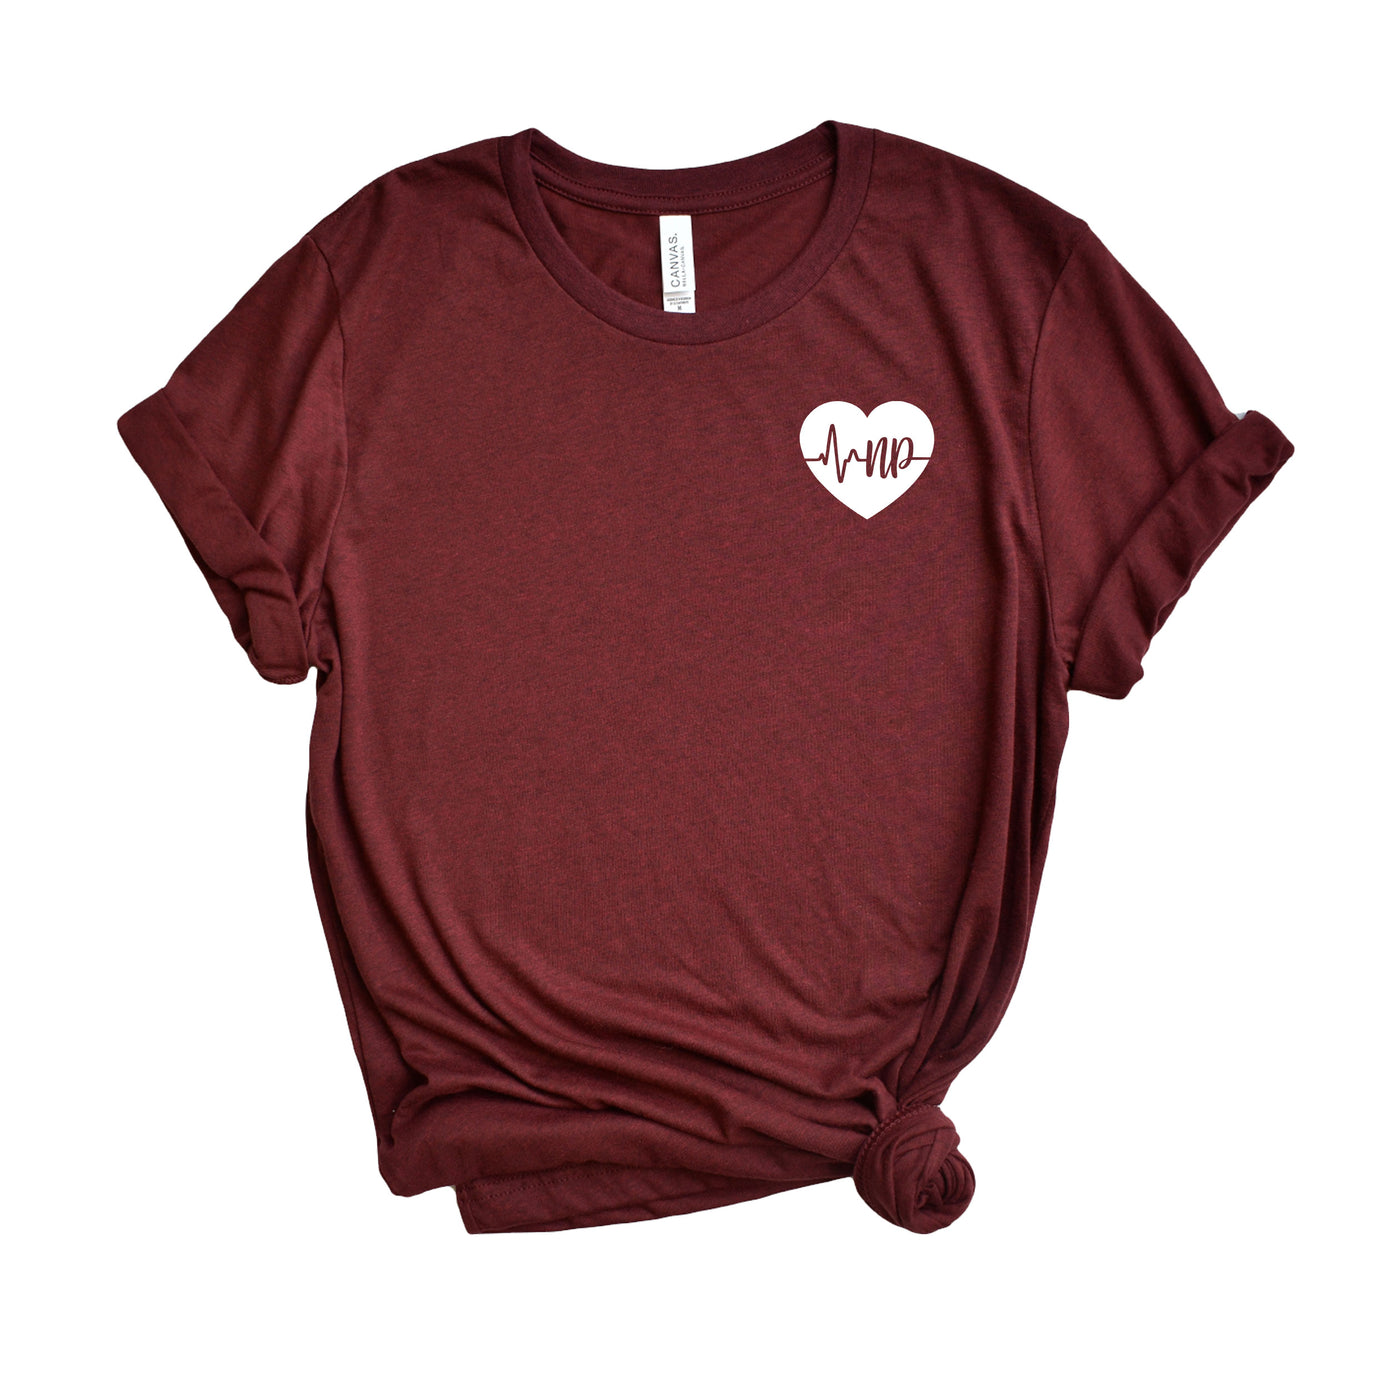 NP ECG Heart - Shirt